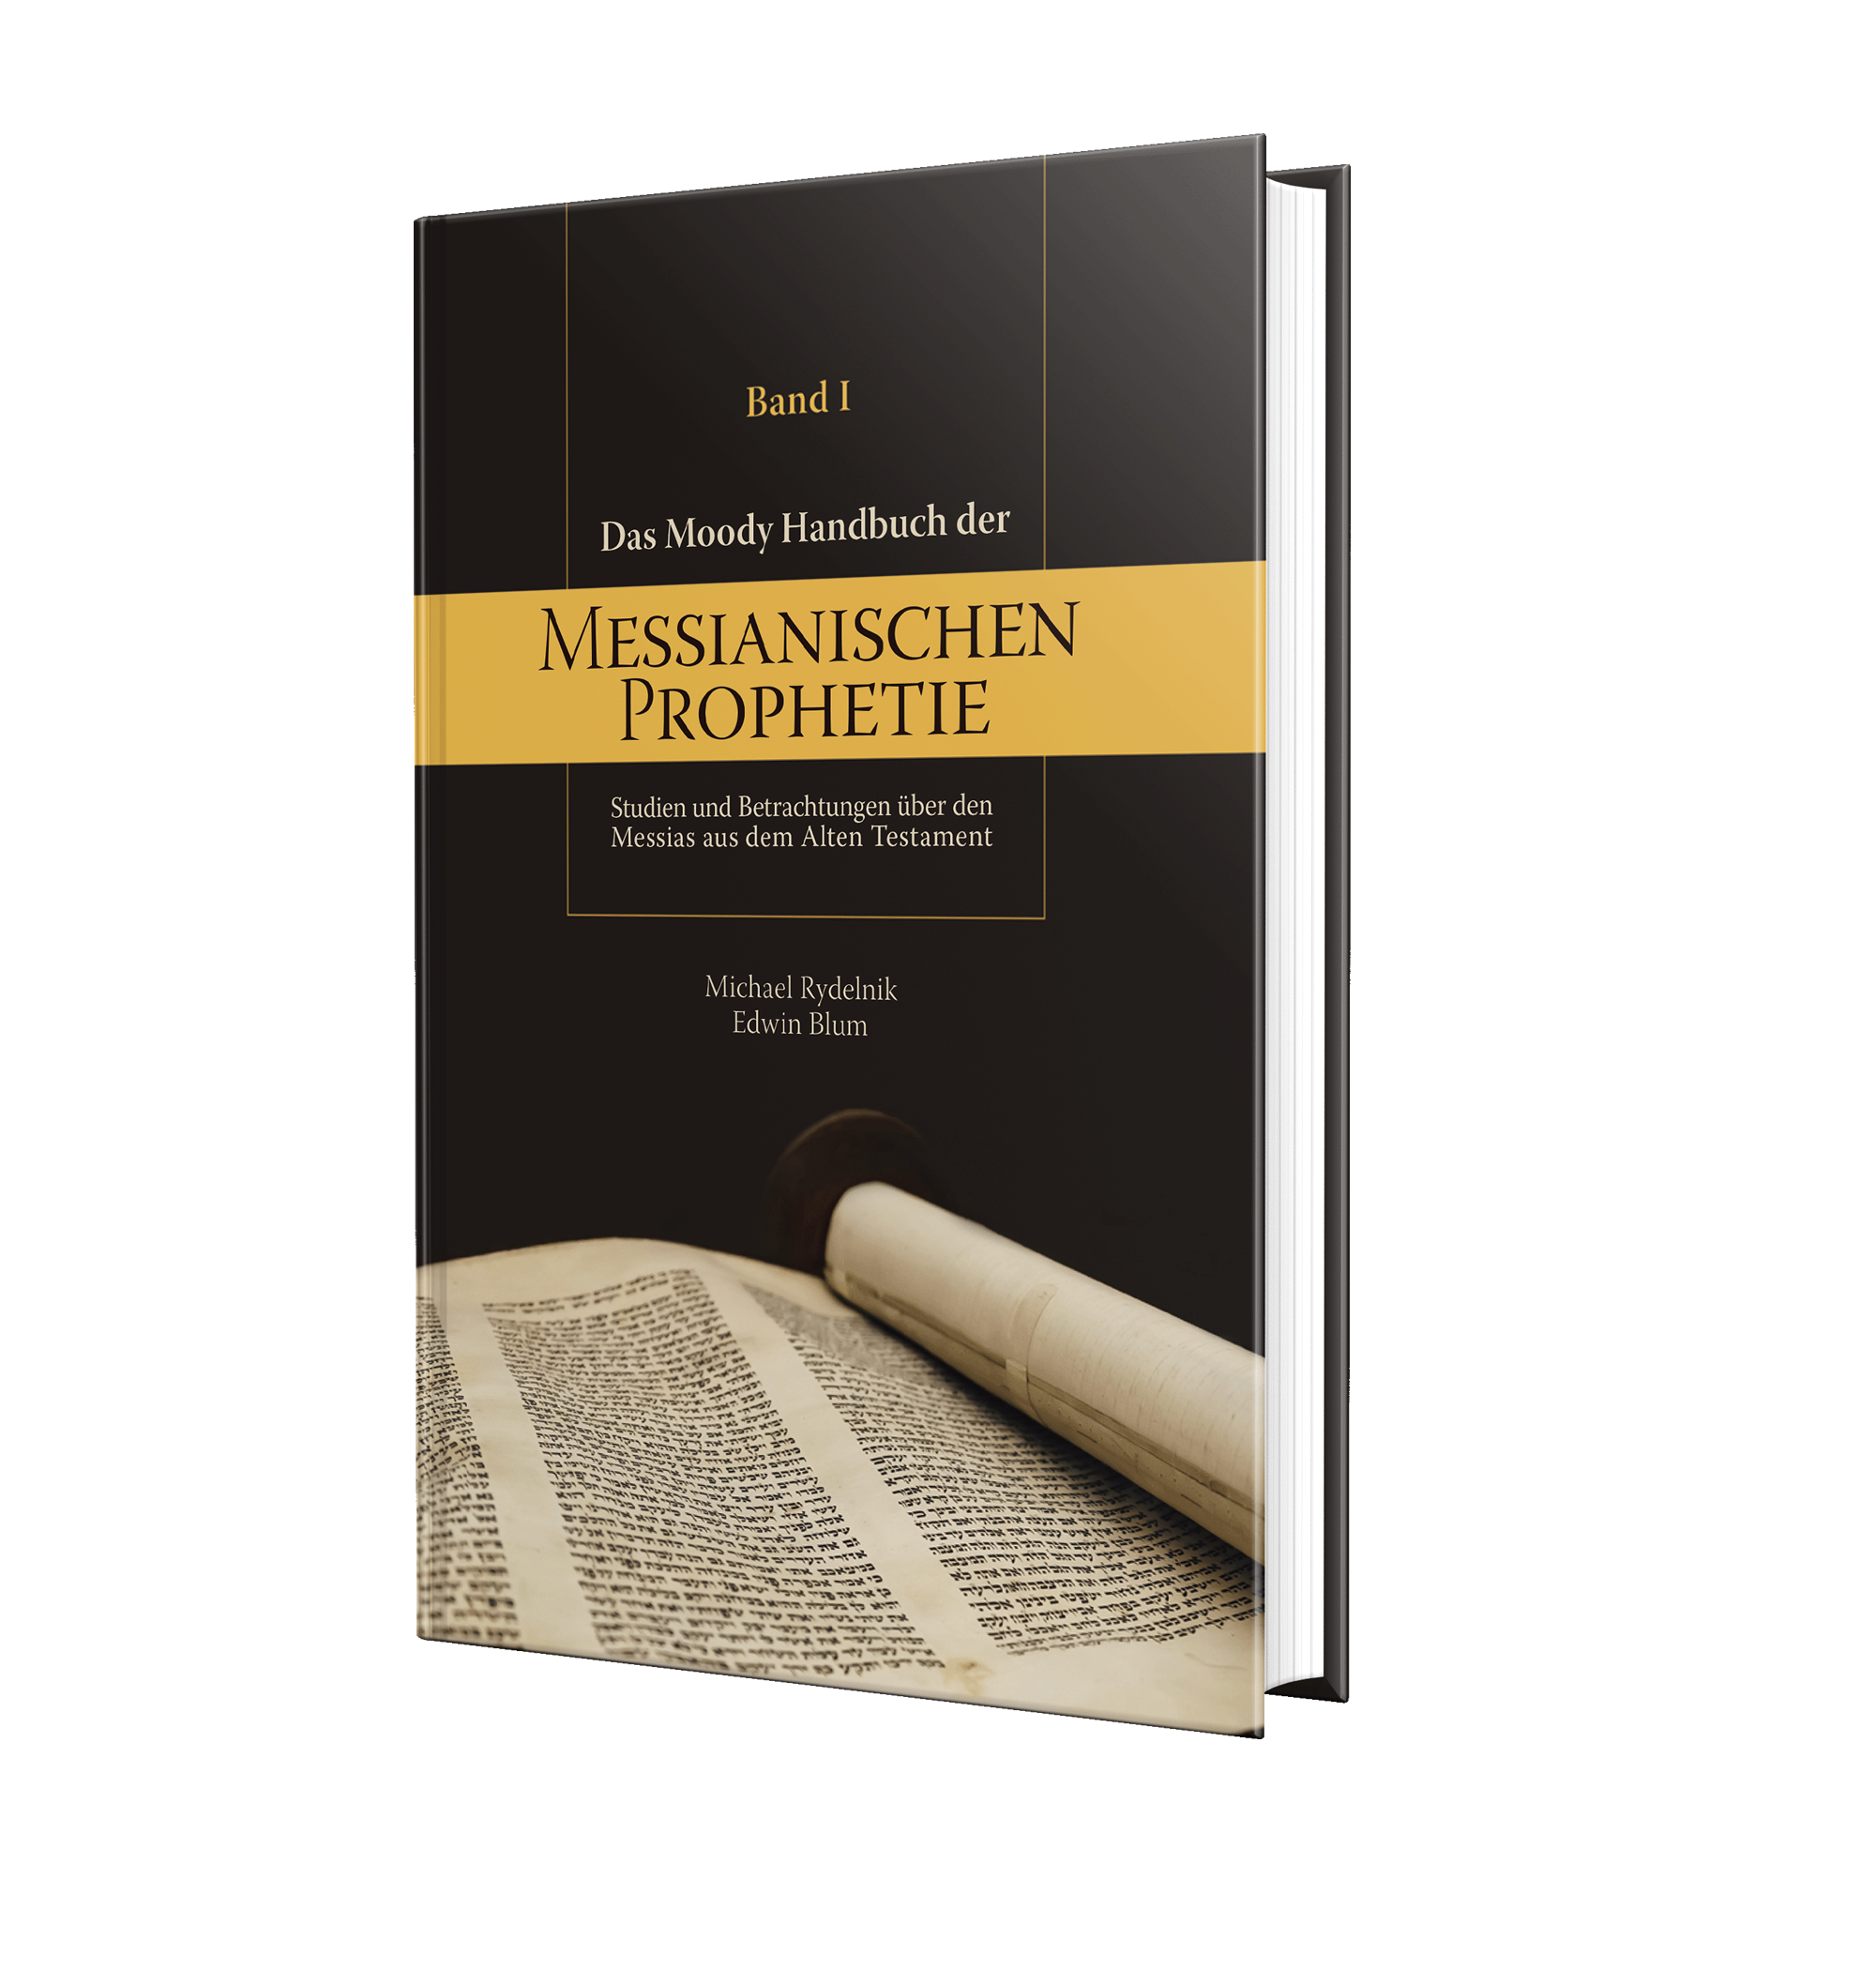 Das Moody Handbuch der Messianischen Prophetie - Studien und Betrachtungen über den Messias aus dem Alten Testament - Band 1